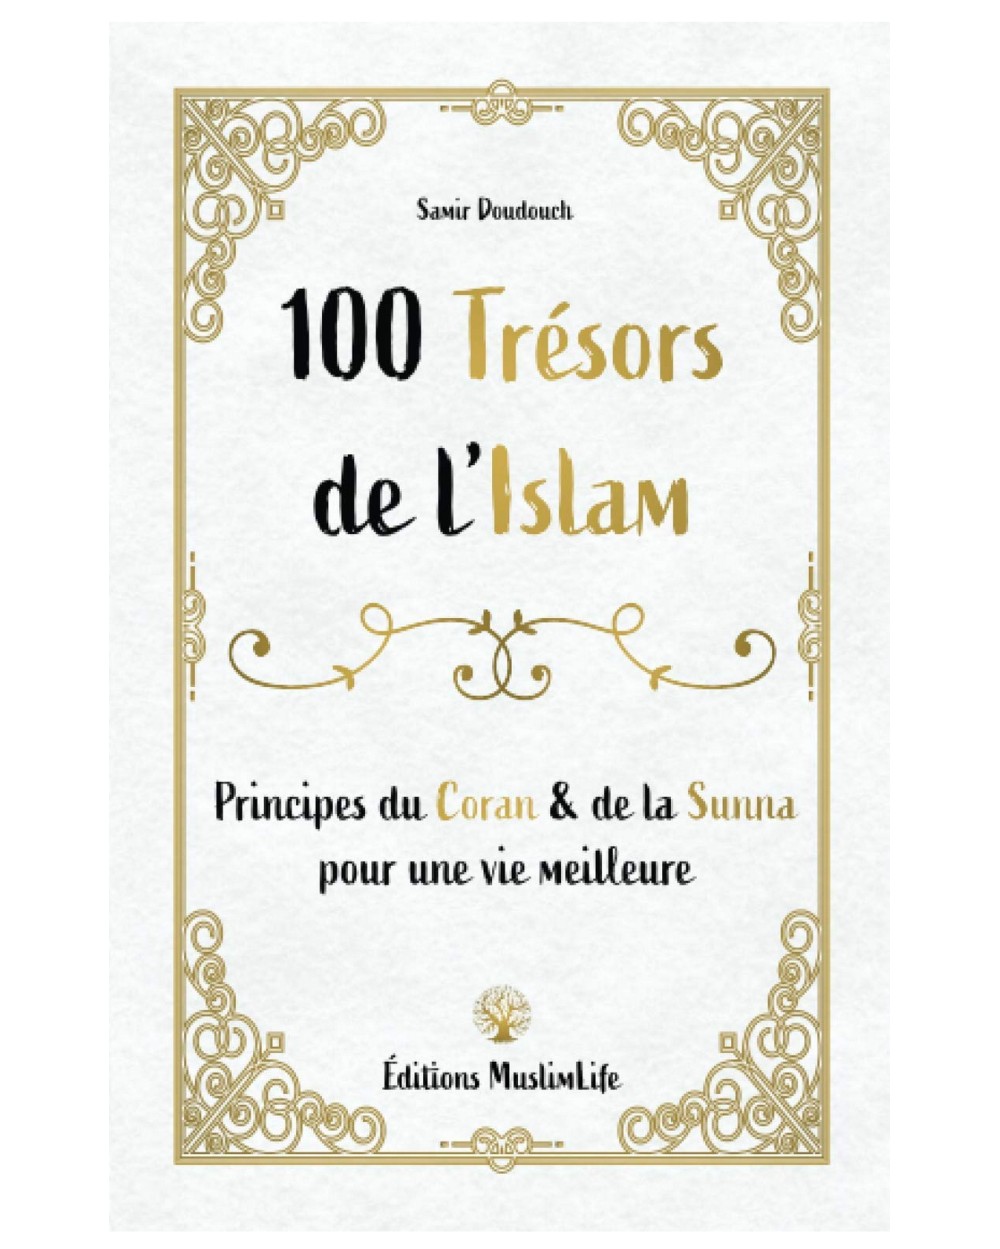 100 Trésors de l'Islam - Samir Doudouch - Edition Muslimlife